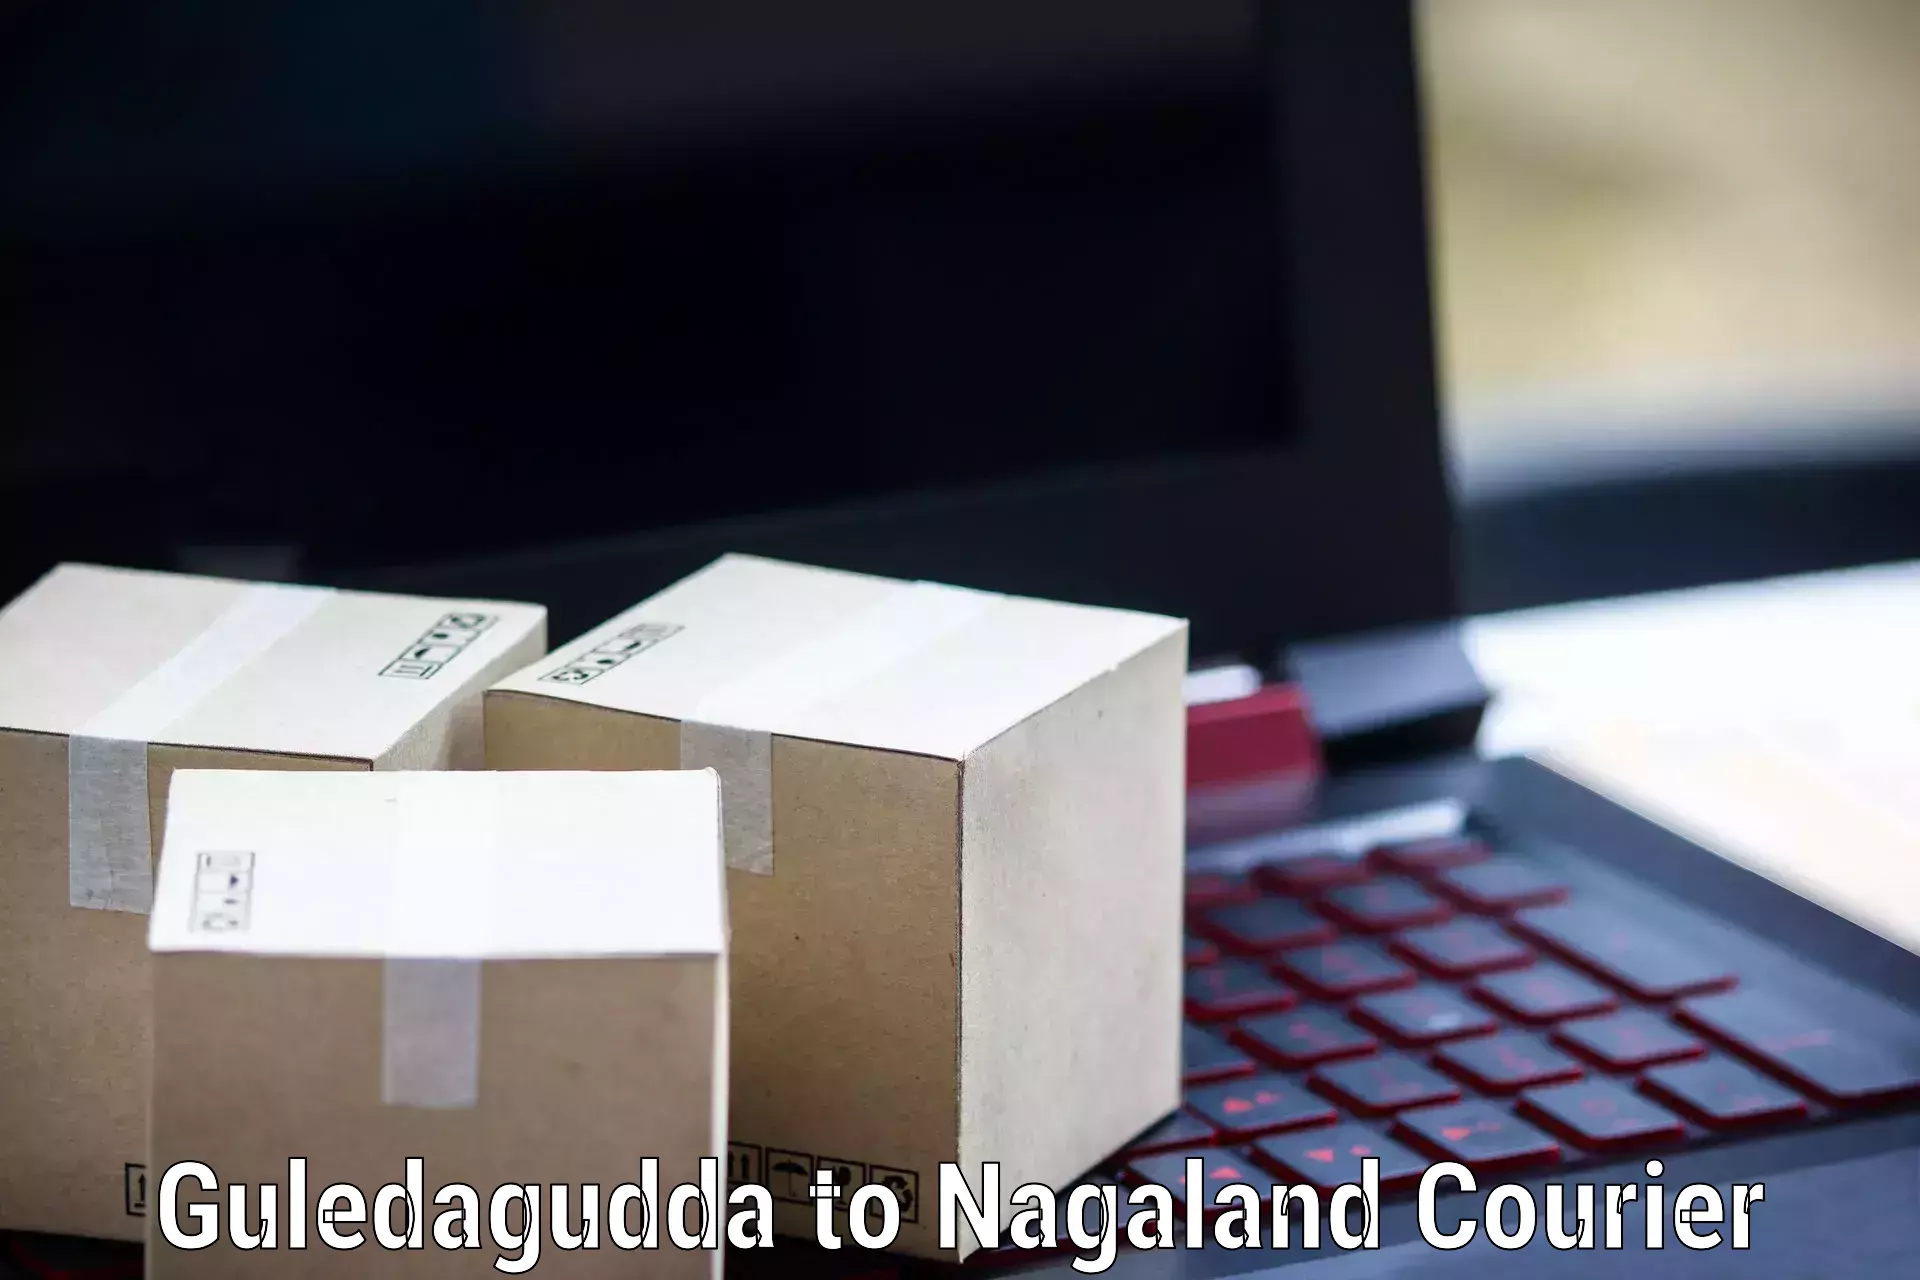 Customer-oriented courier services in Guledagudda to Dimapur